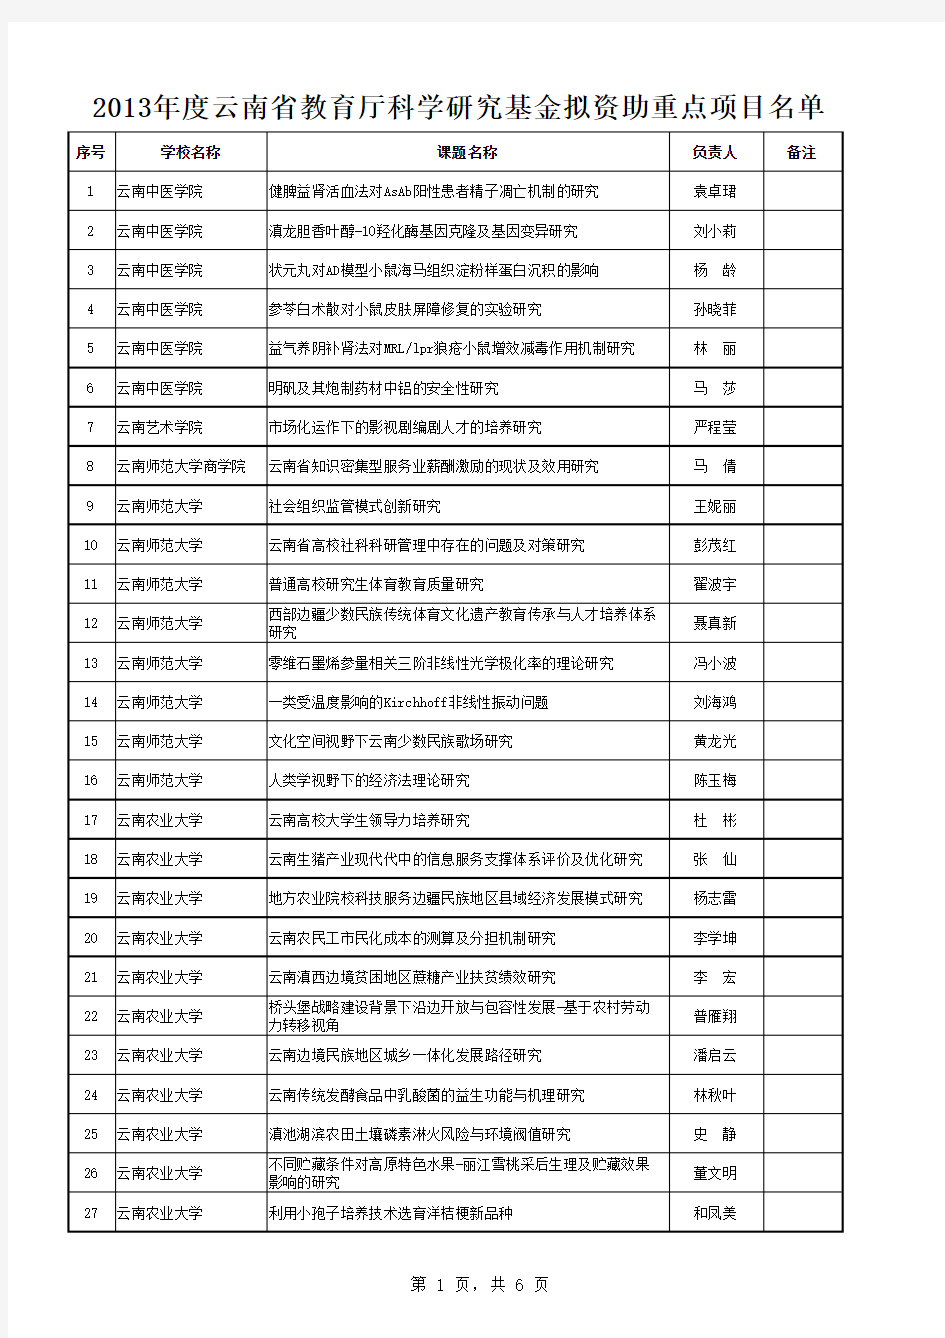 2013年度云南省教育厅科学研究基金拟资助重点项目名单